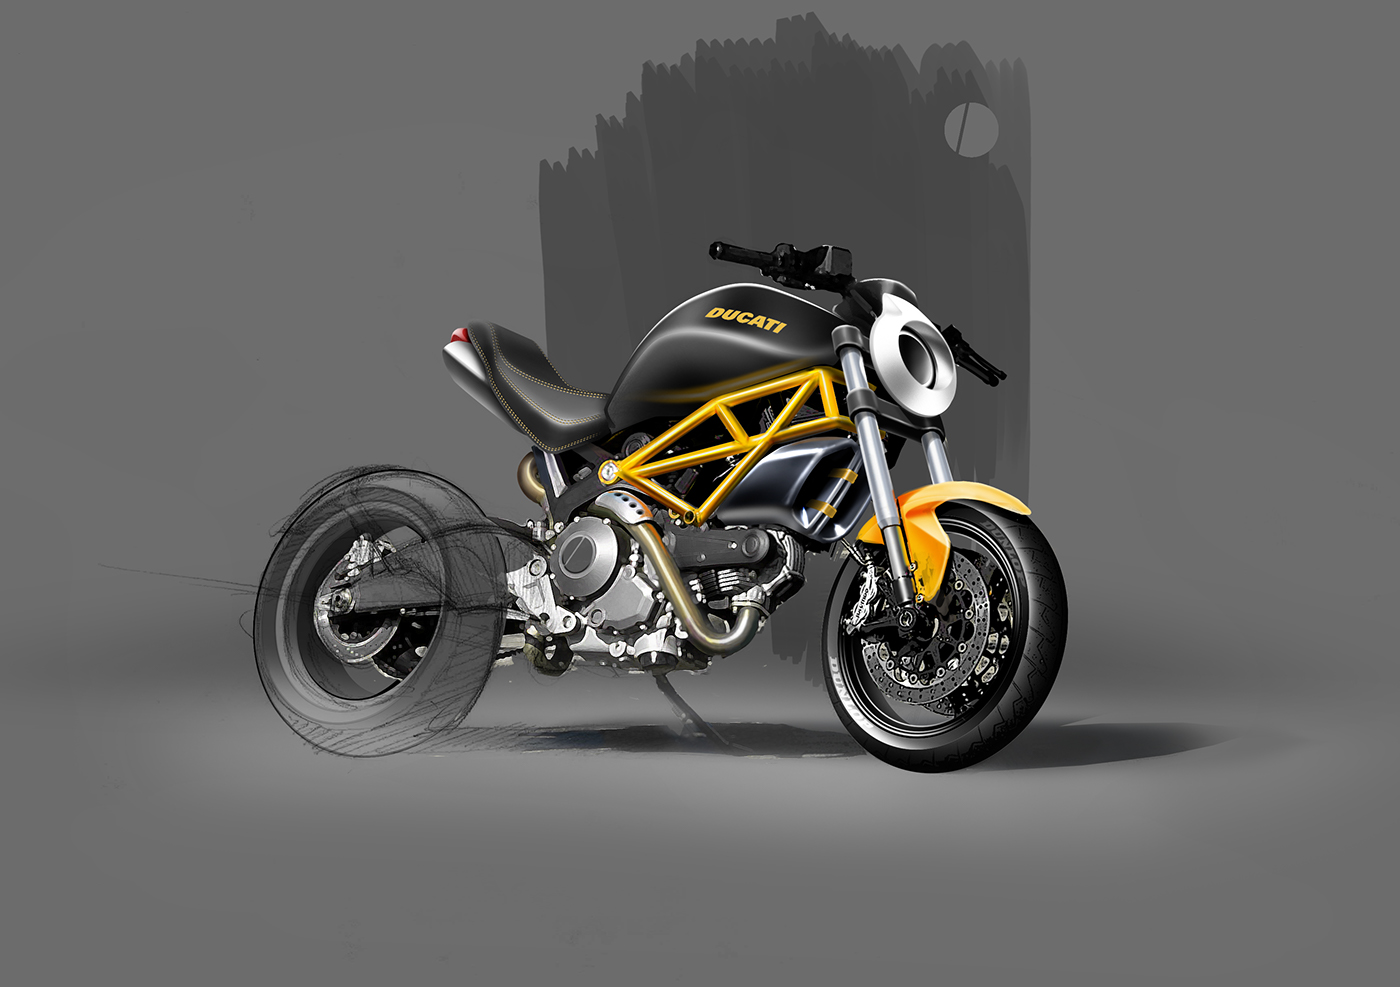 Ducati monoposto design sketch